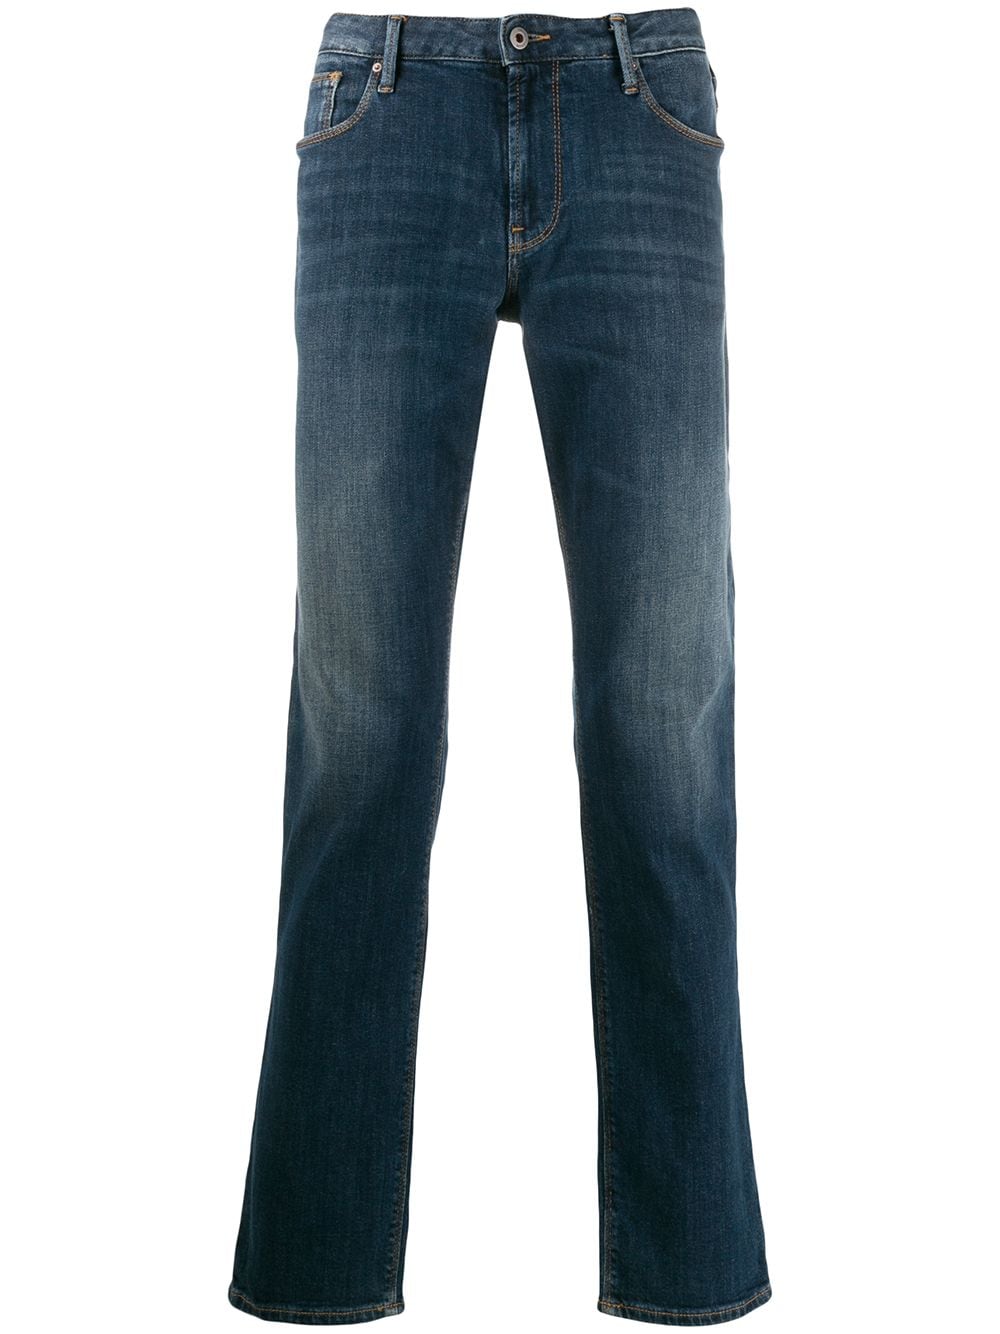 фото Emporio Armani джинсы J06 прямого кроя